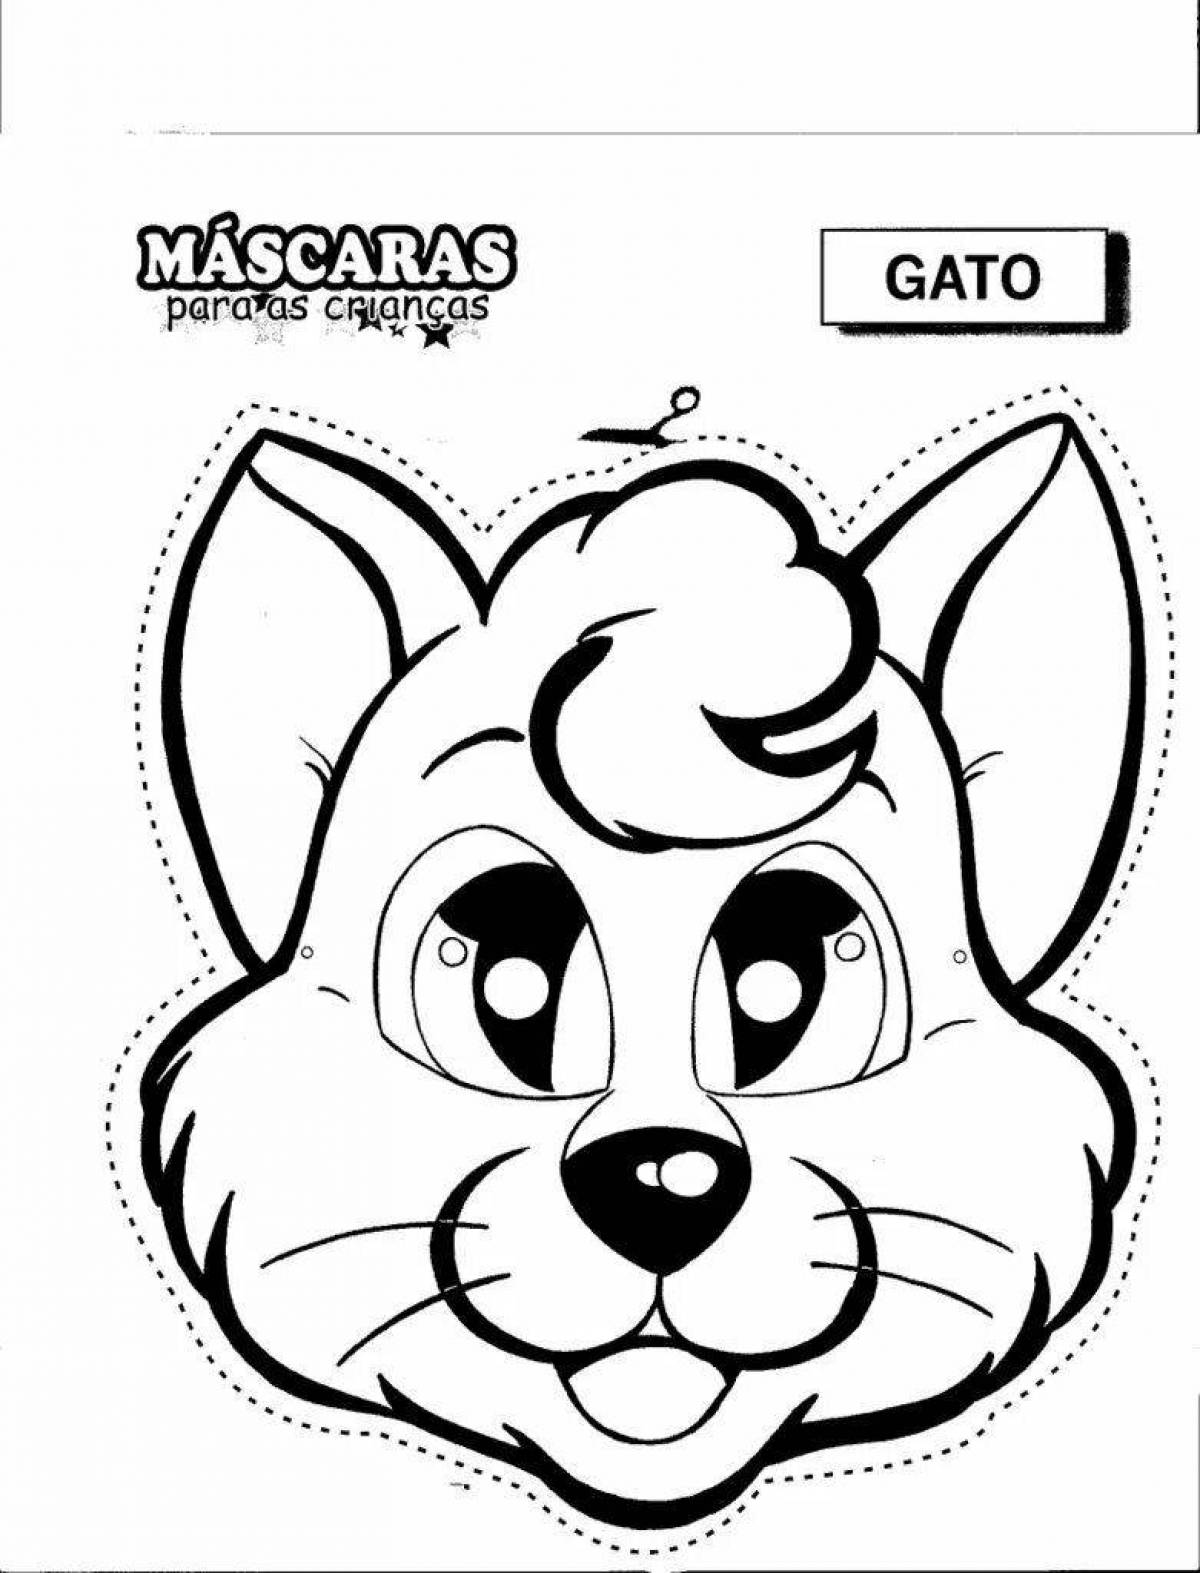 Fun animal mask coloring page design